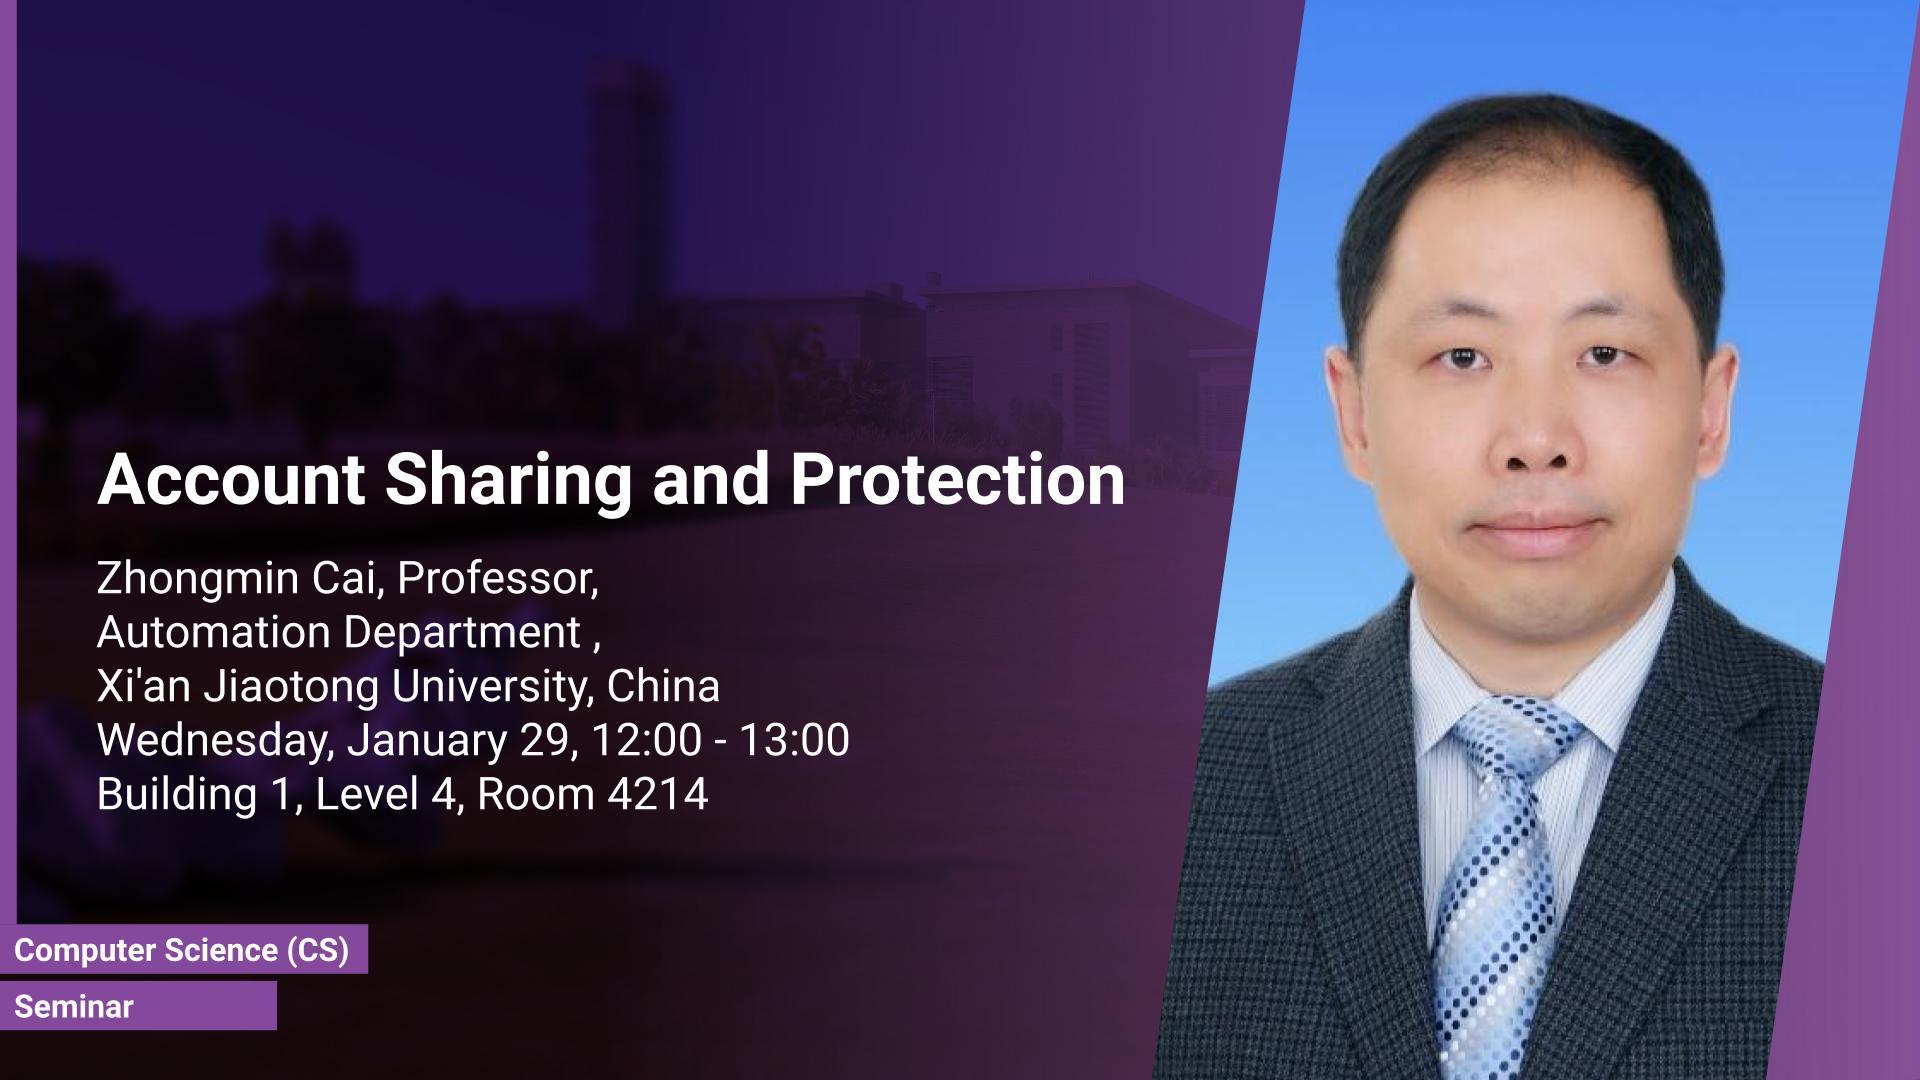 KAUST CEMSE CS Seminar Zhongmin Cai Account Sharing and Protection